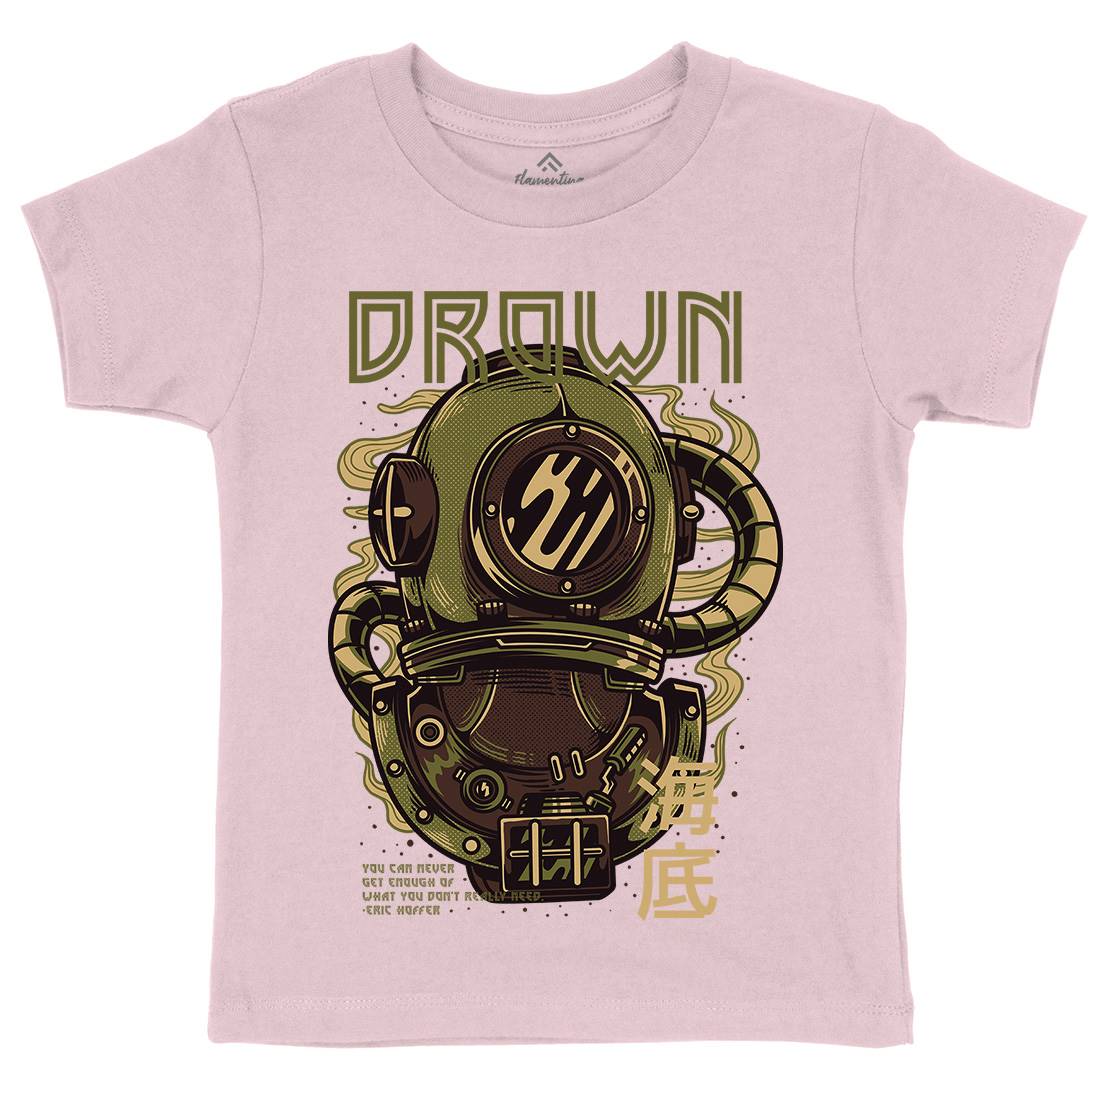 Drown Kids Crew Neck T-Shirt Navy D762